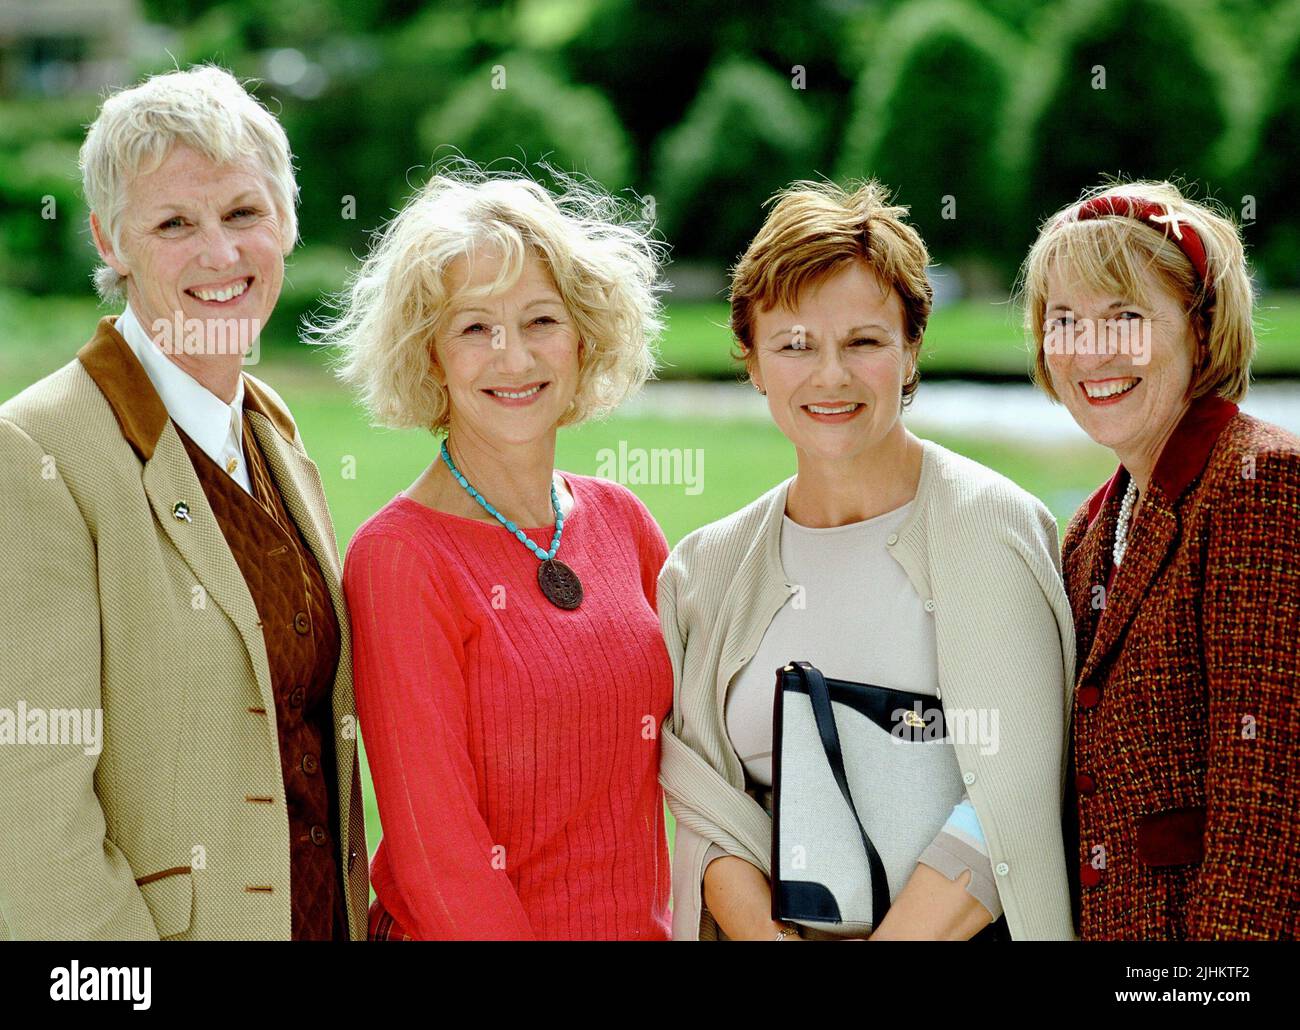 TRICIA STEWART, HELEN MIRREN, JULIE WALTERS, ANGELA BAKER, CALENDAR GIRLS, 2003 Stock Photo